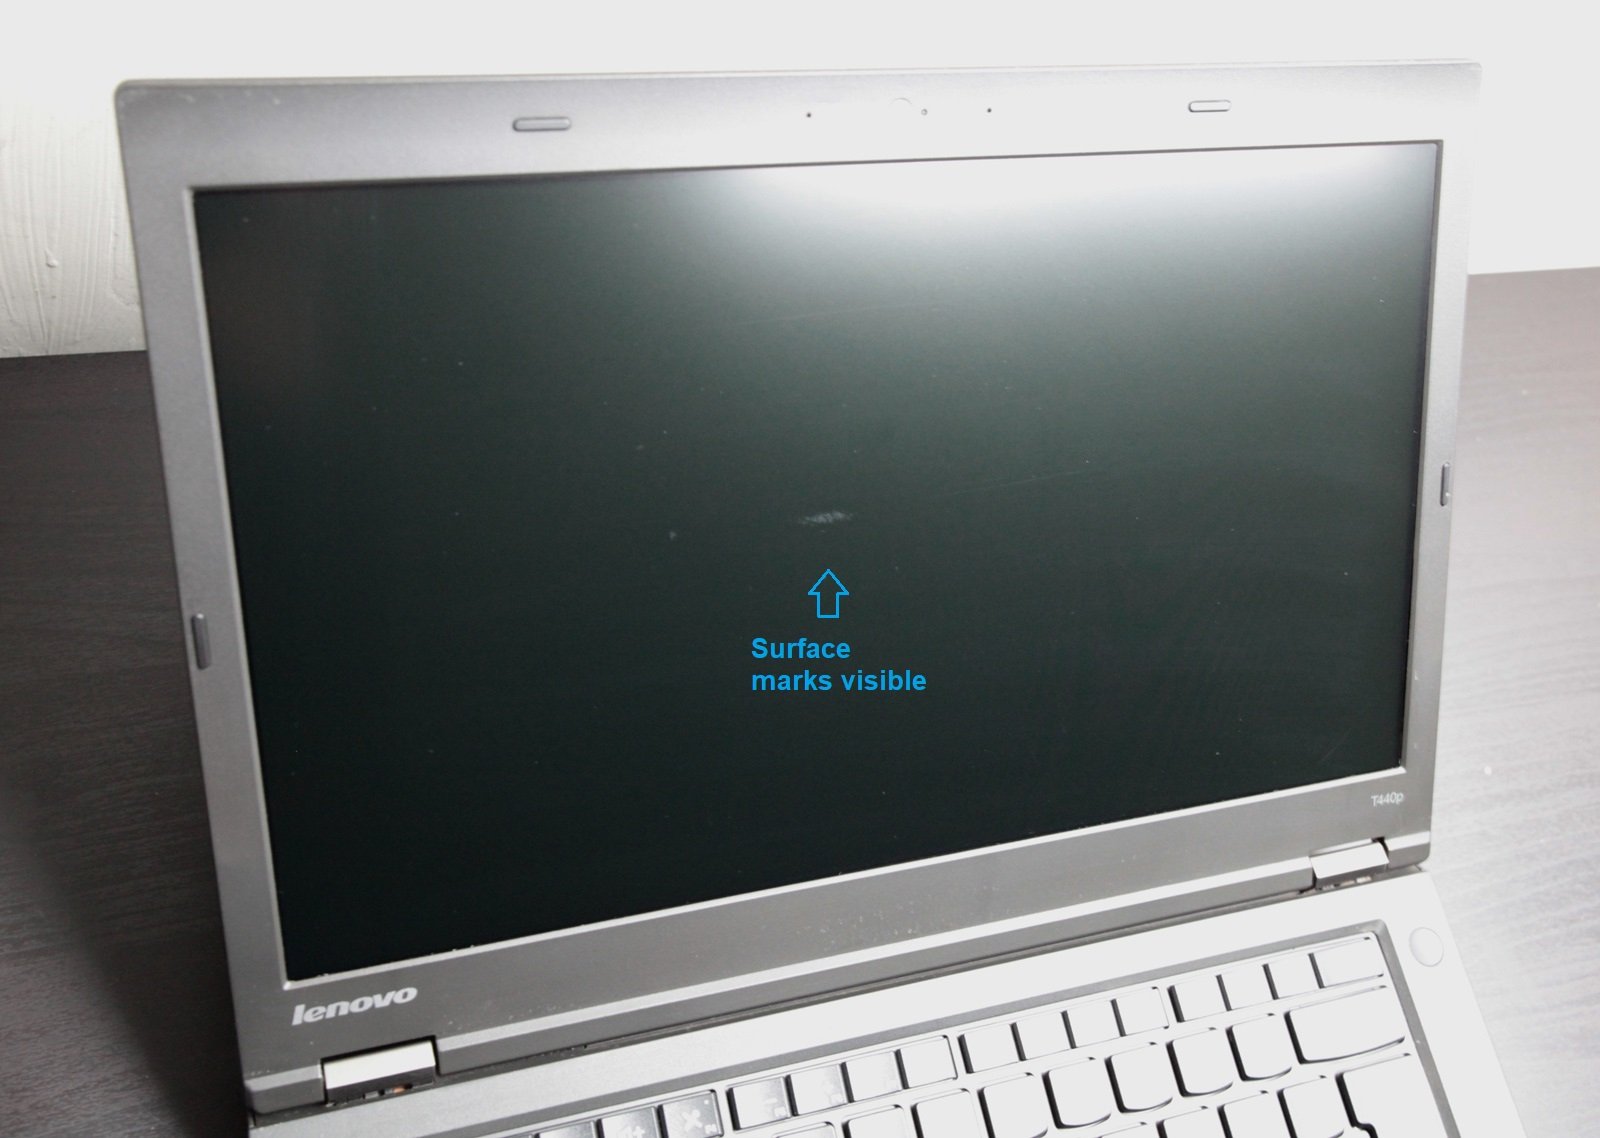 Lenovo T440P Laptop: Core i7-4600M 8GB RAM, 240GB SSD, 730M, VAT - CruiseTech